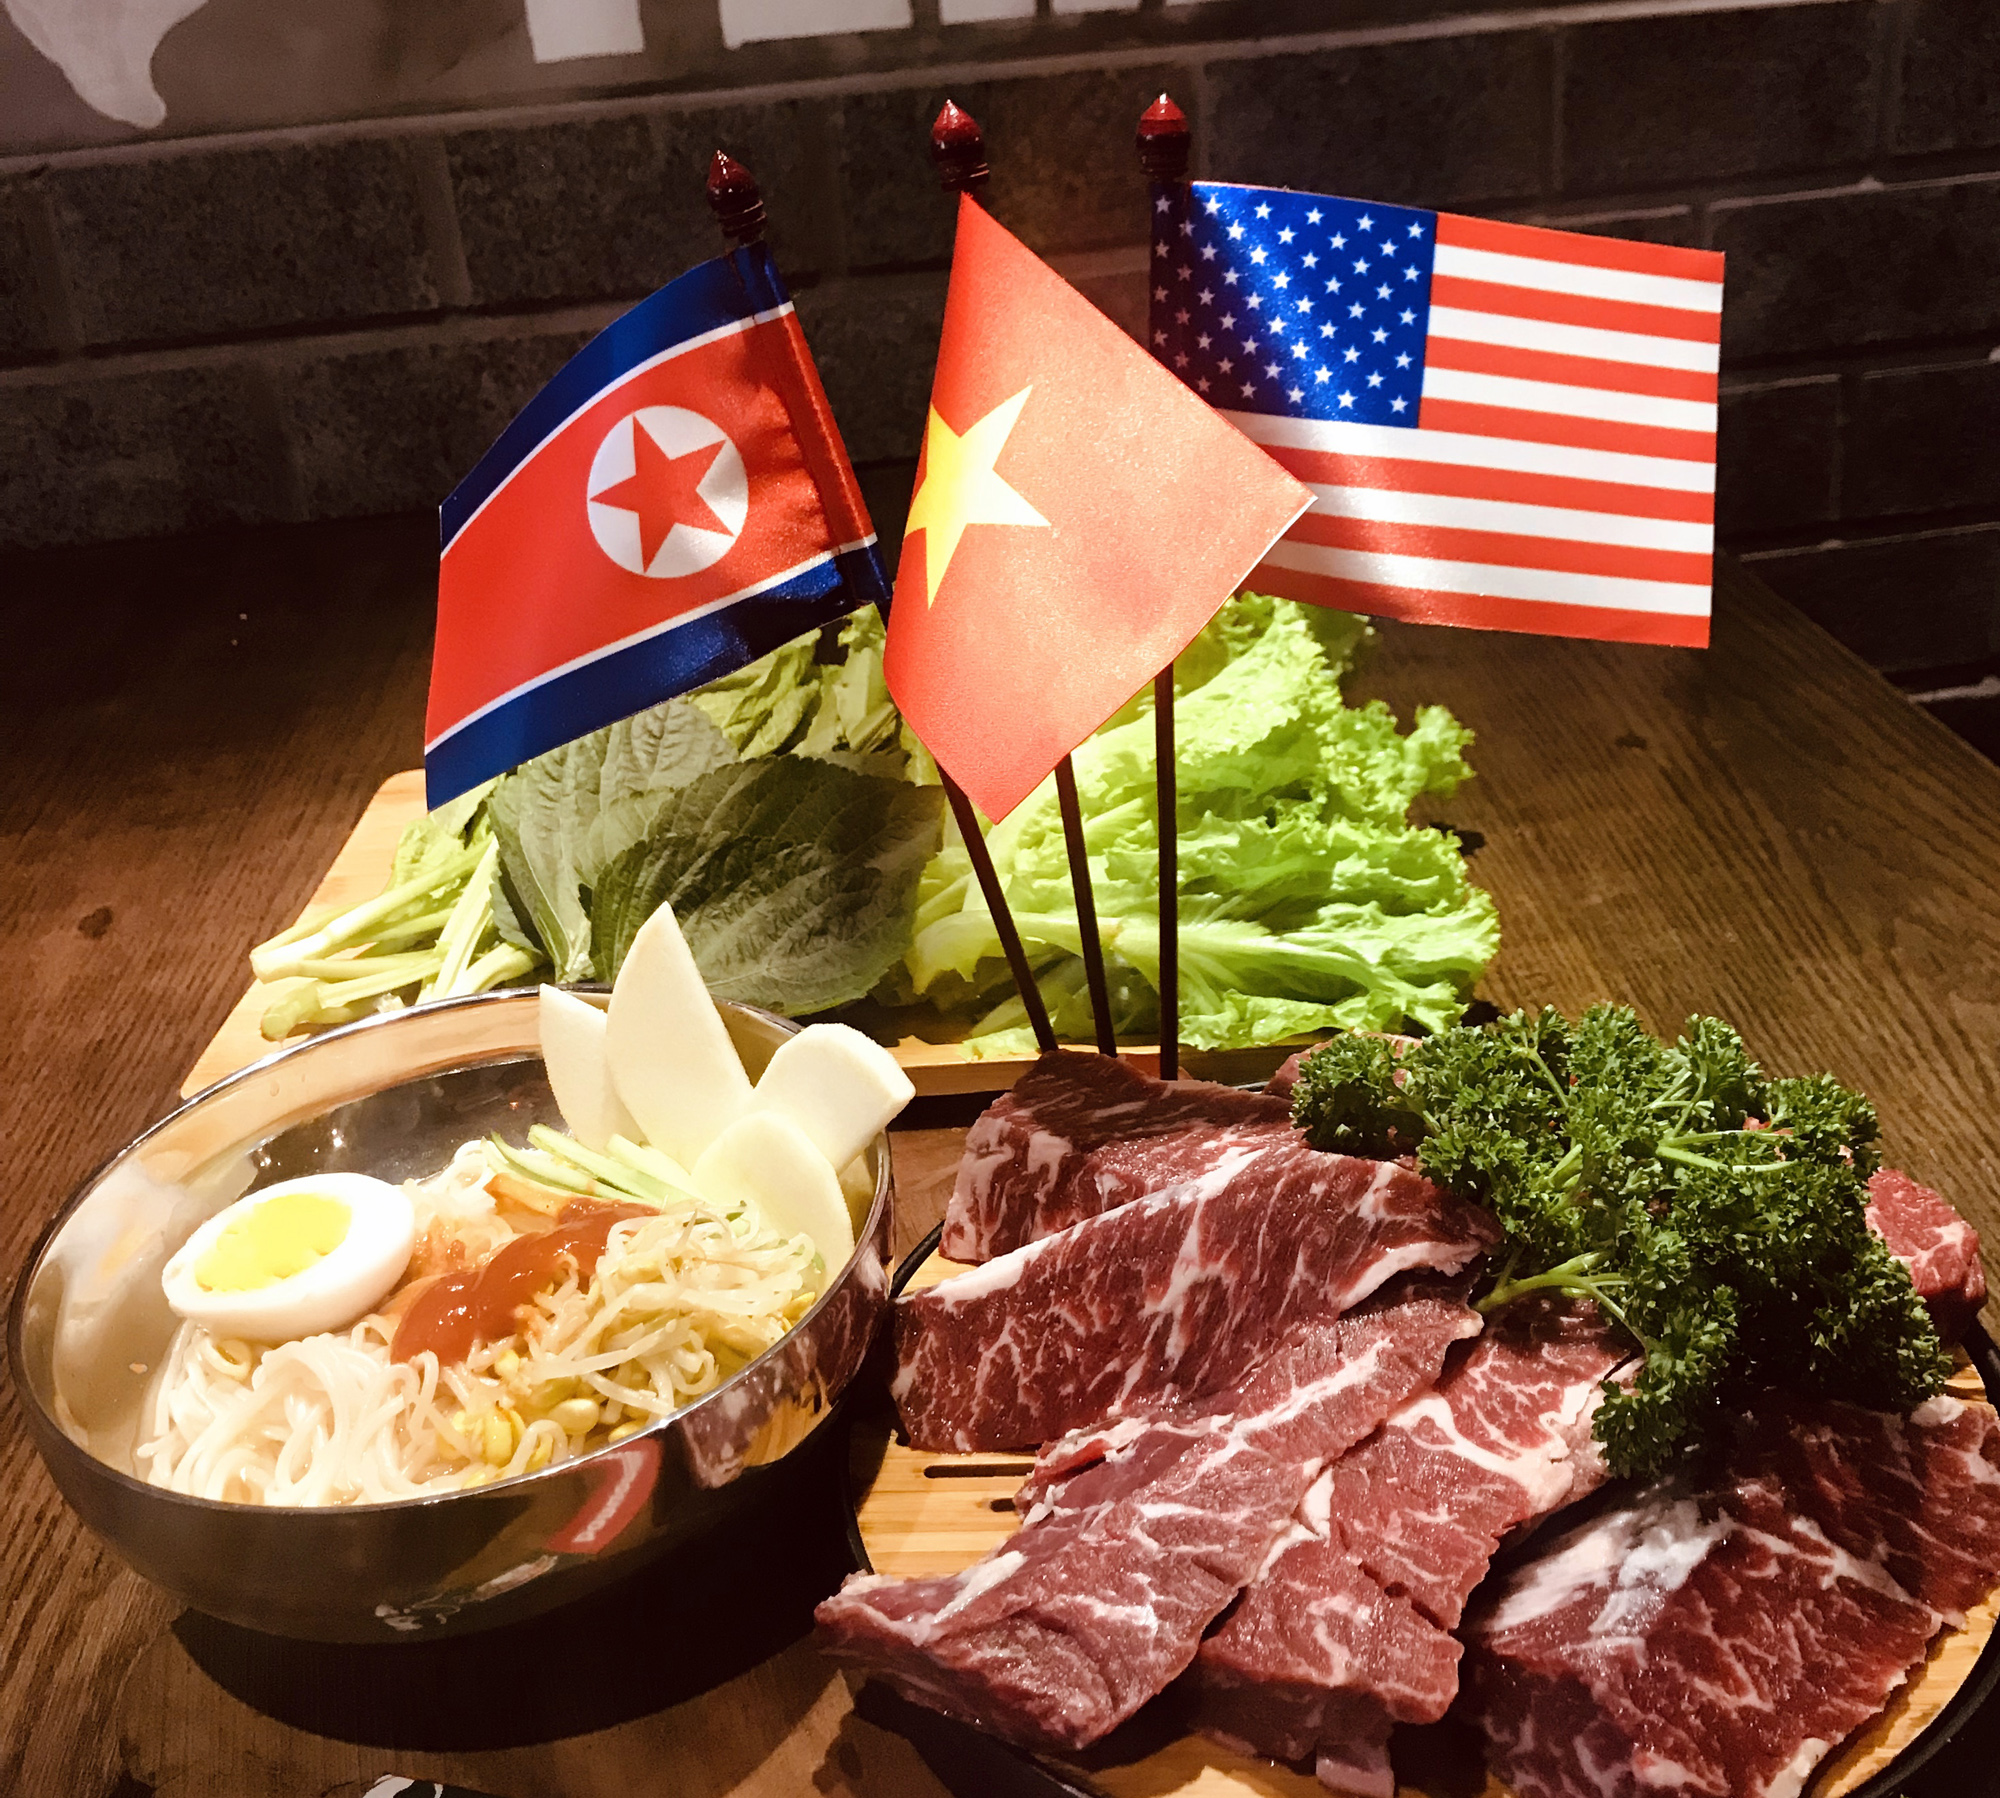 Dành tình yêu cho đất nước Triều Tiên sau chuyến thăm mới đây tới đất nước này, anh Trương Quốc Hùng, chủ 1 nhà hàng tại phố Tô Hiến Thành (Hà Nội), đã quyết định đưa món mì lạnh Triều Tiên vào thực đơn của nhà hàng. Những lá cờ Mỹ, Triều Tiên và Việt Nam đã được xuất hiện cùng các món ăn.